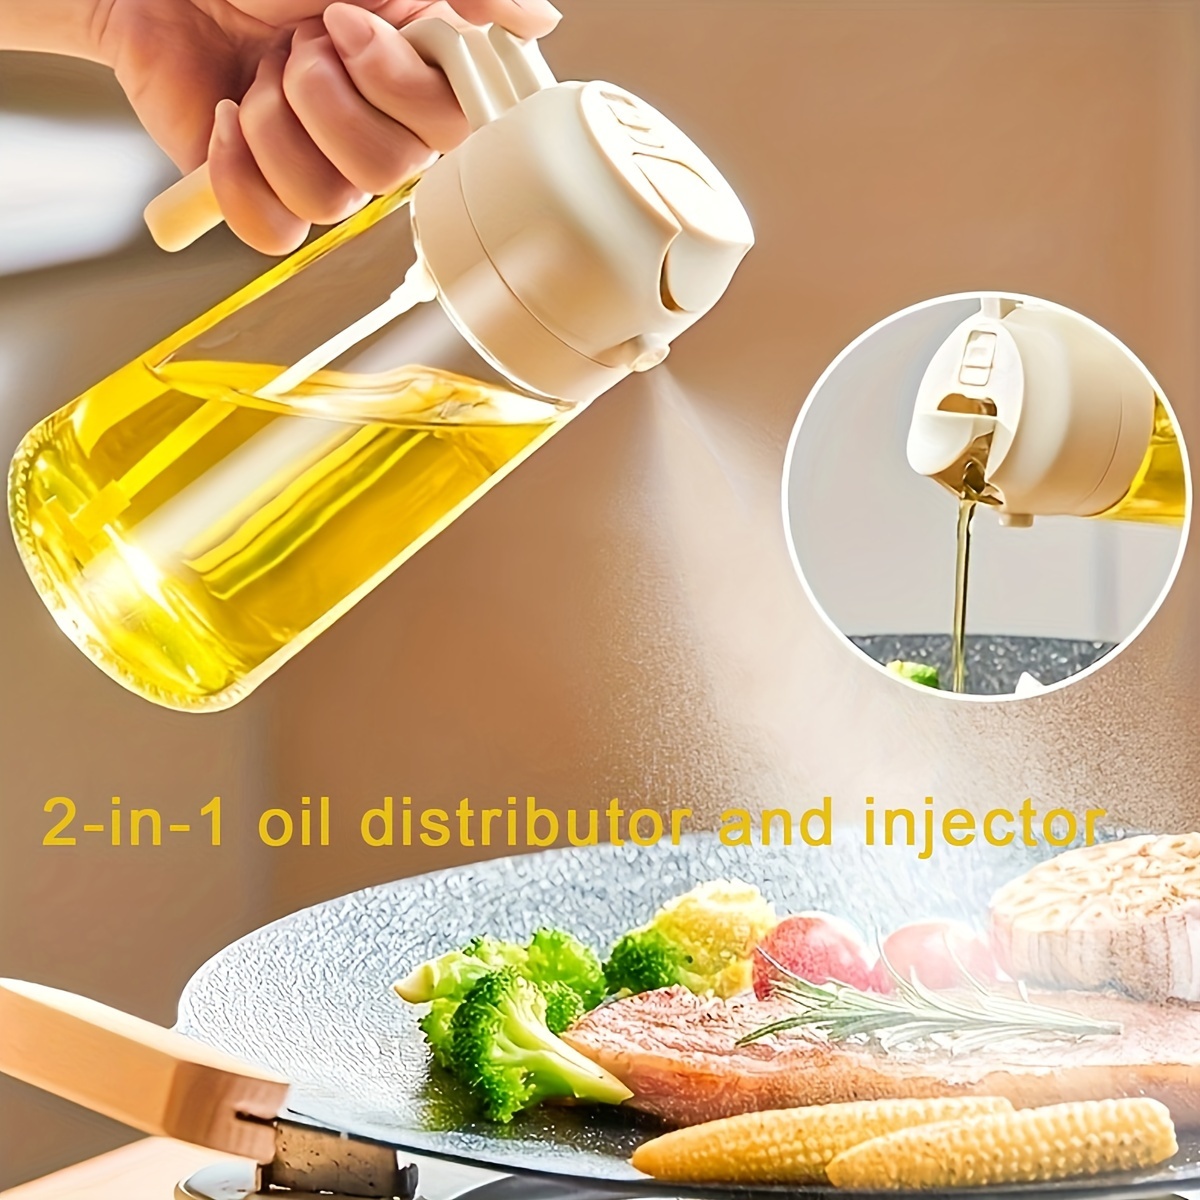  2 pulverizadores de aceite para cocinar, rociador de aceite de  oliva, dispensador de aceite para cocina, dispensador de aceite de oliva,  botella de aceite de oliva, botella de aceite, botella de 